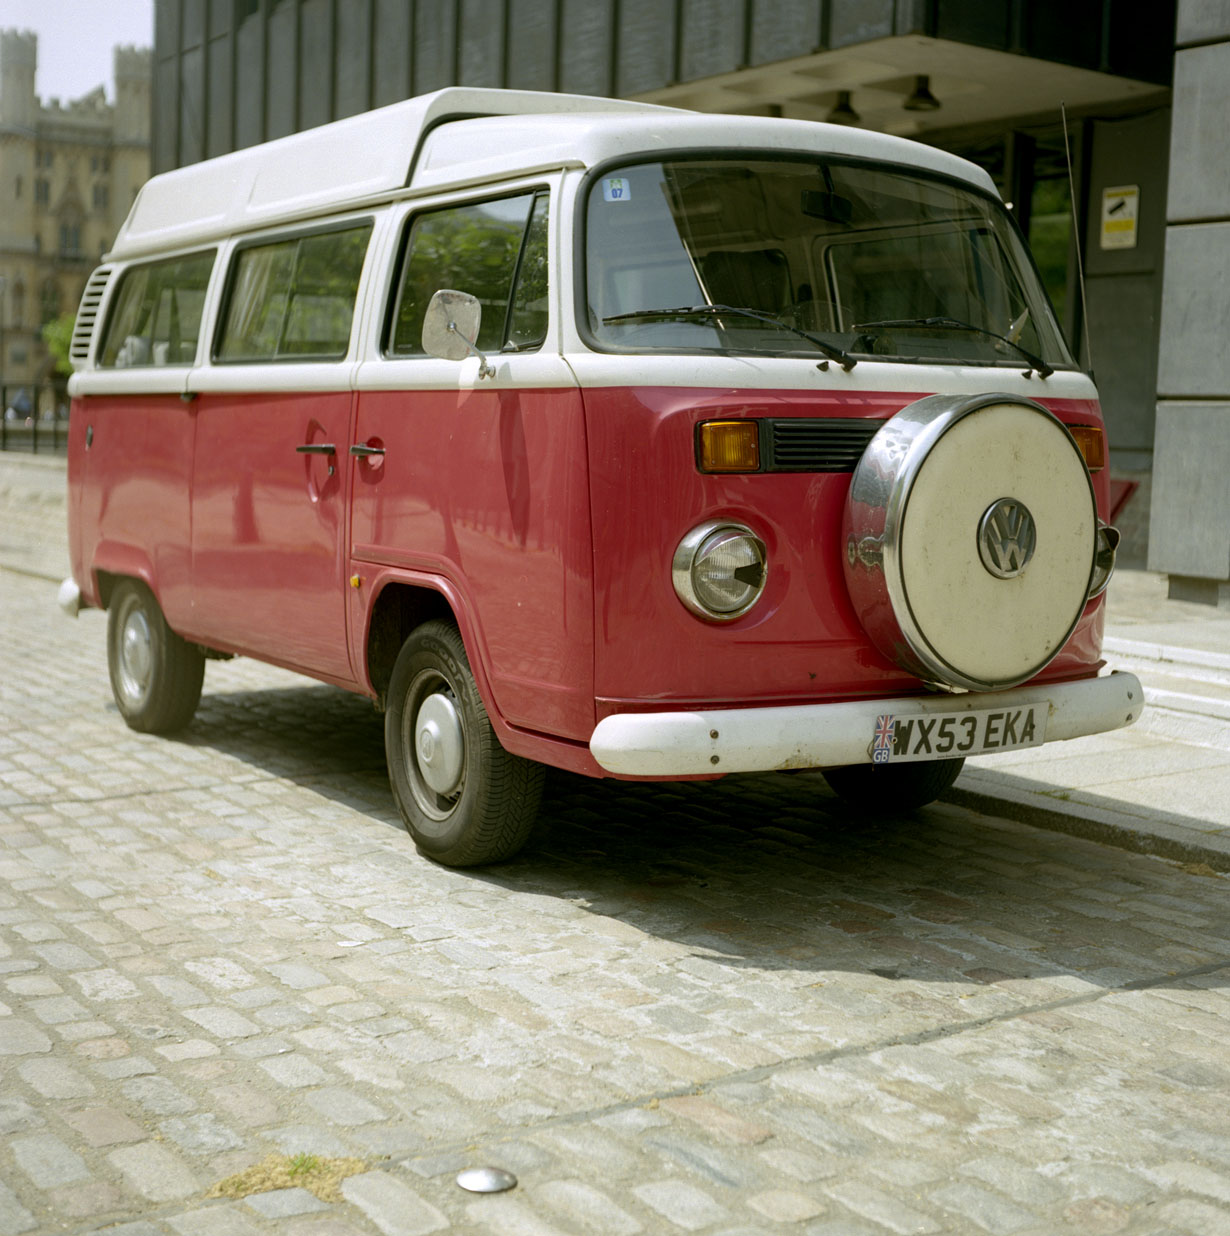 fotka / image VW Transporter Mk.I, Summer in London